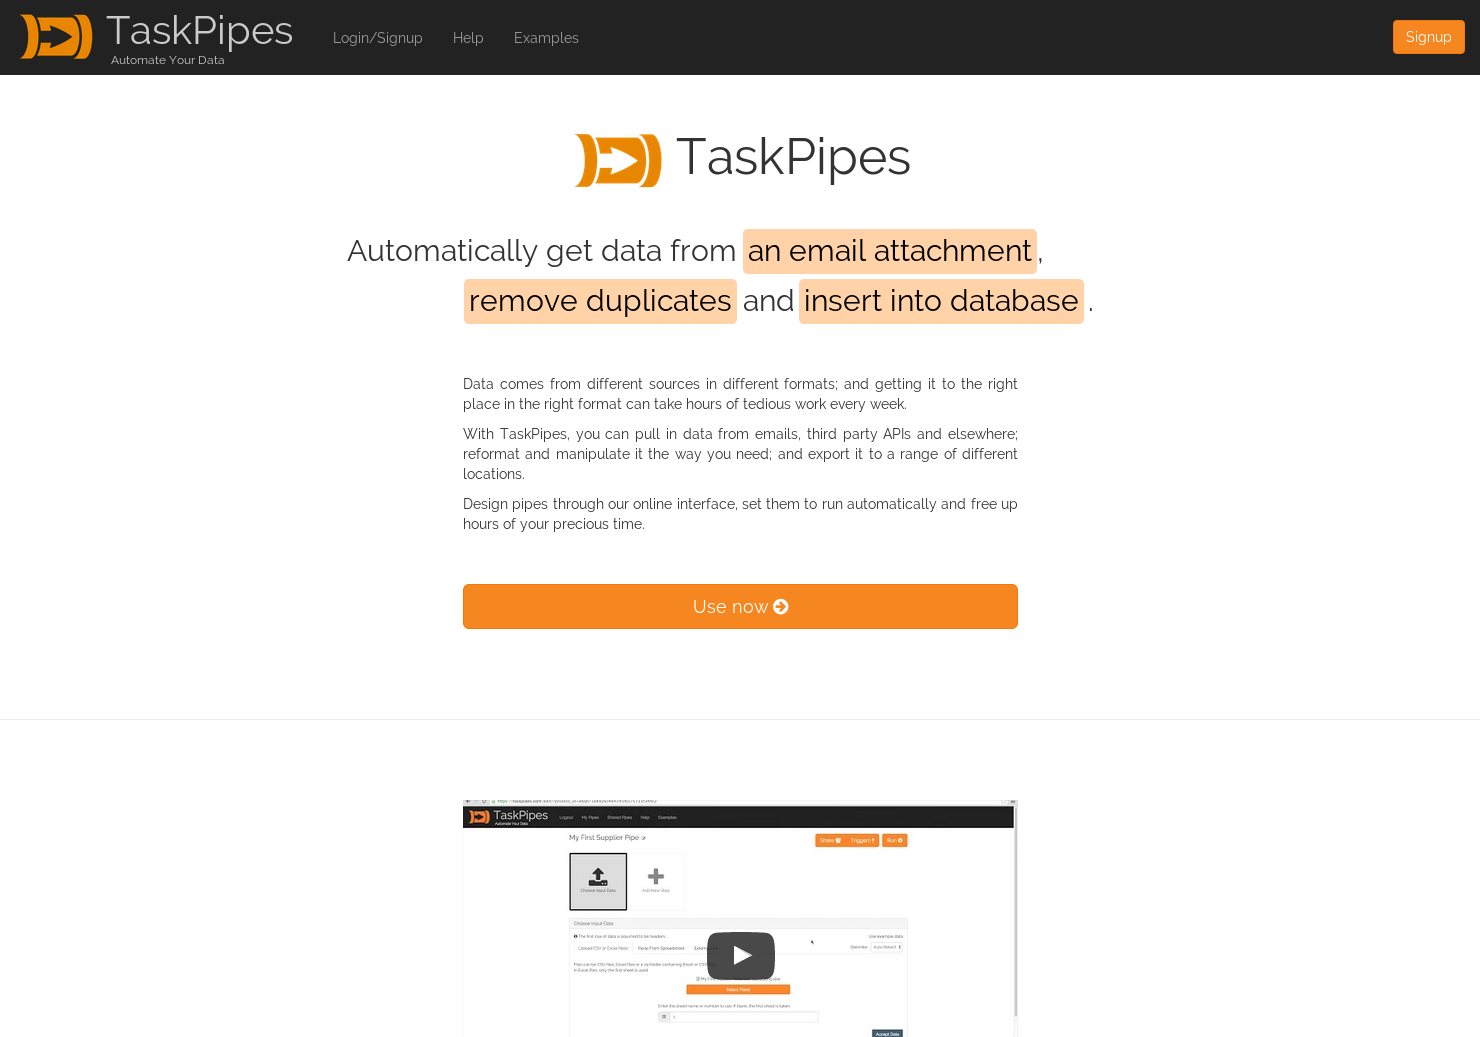 TaskPipes